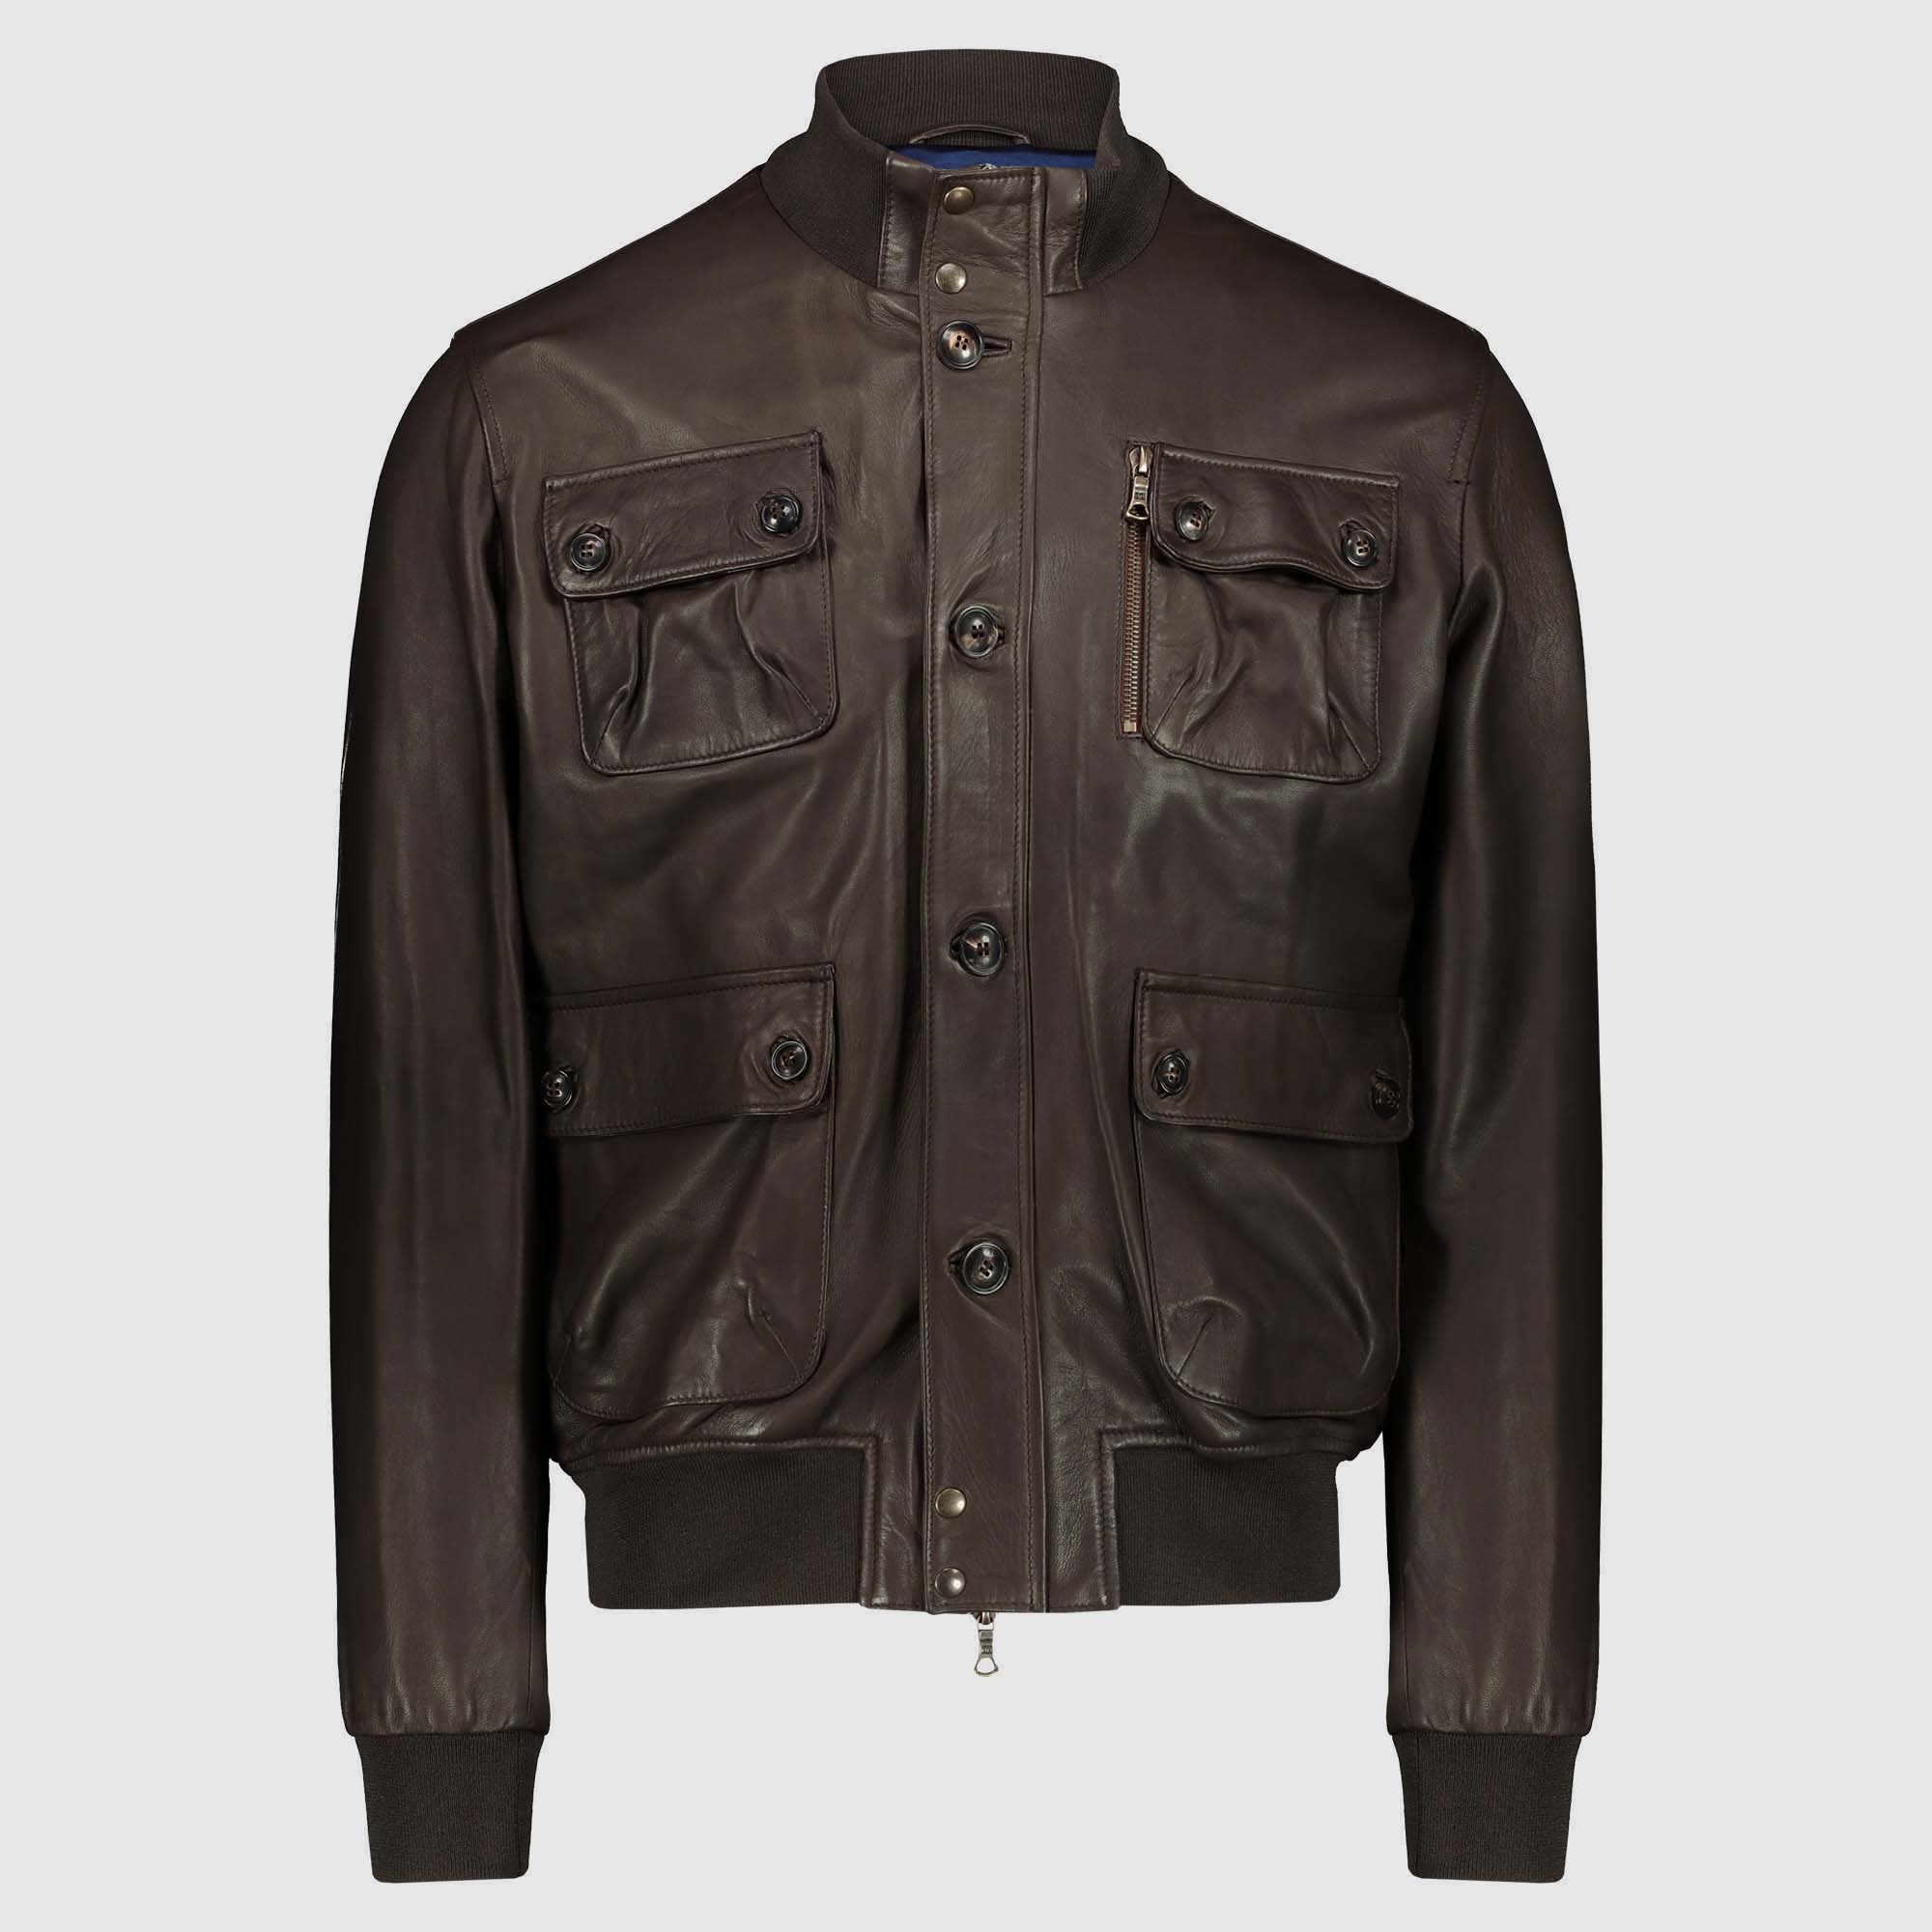 Lambskin Brown Jacket “A1 Marlon” Atacama on sale 2022